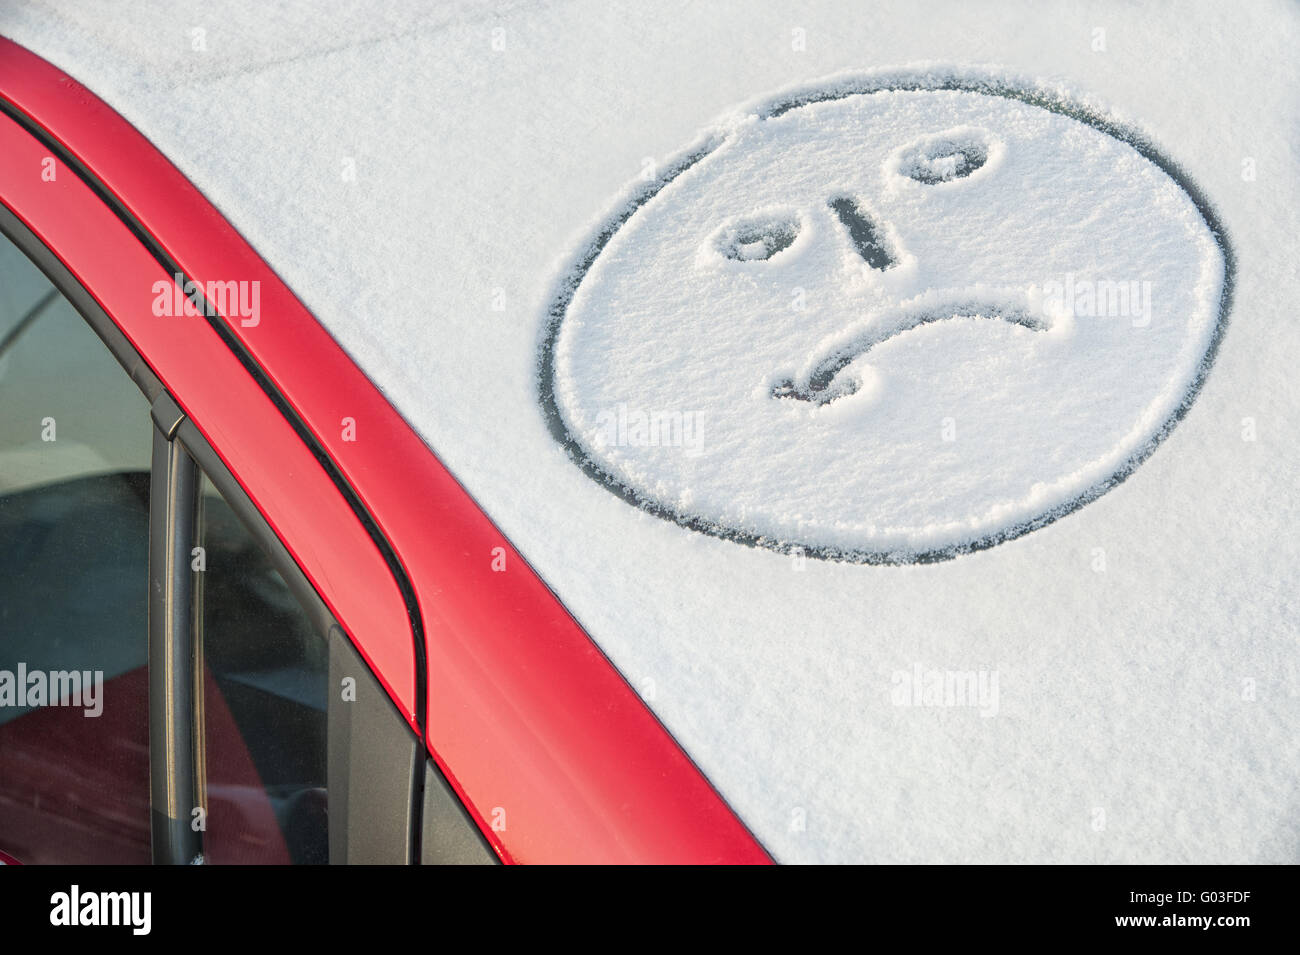 Visage en pleurs sur le pare-brise d'une voiture enneigée Banque D'Images